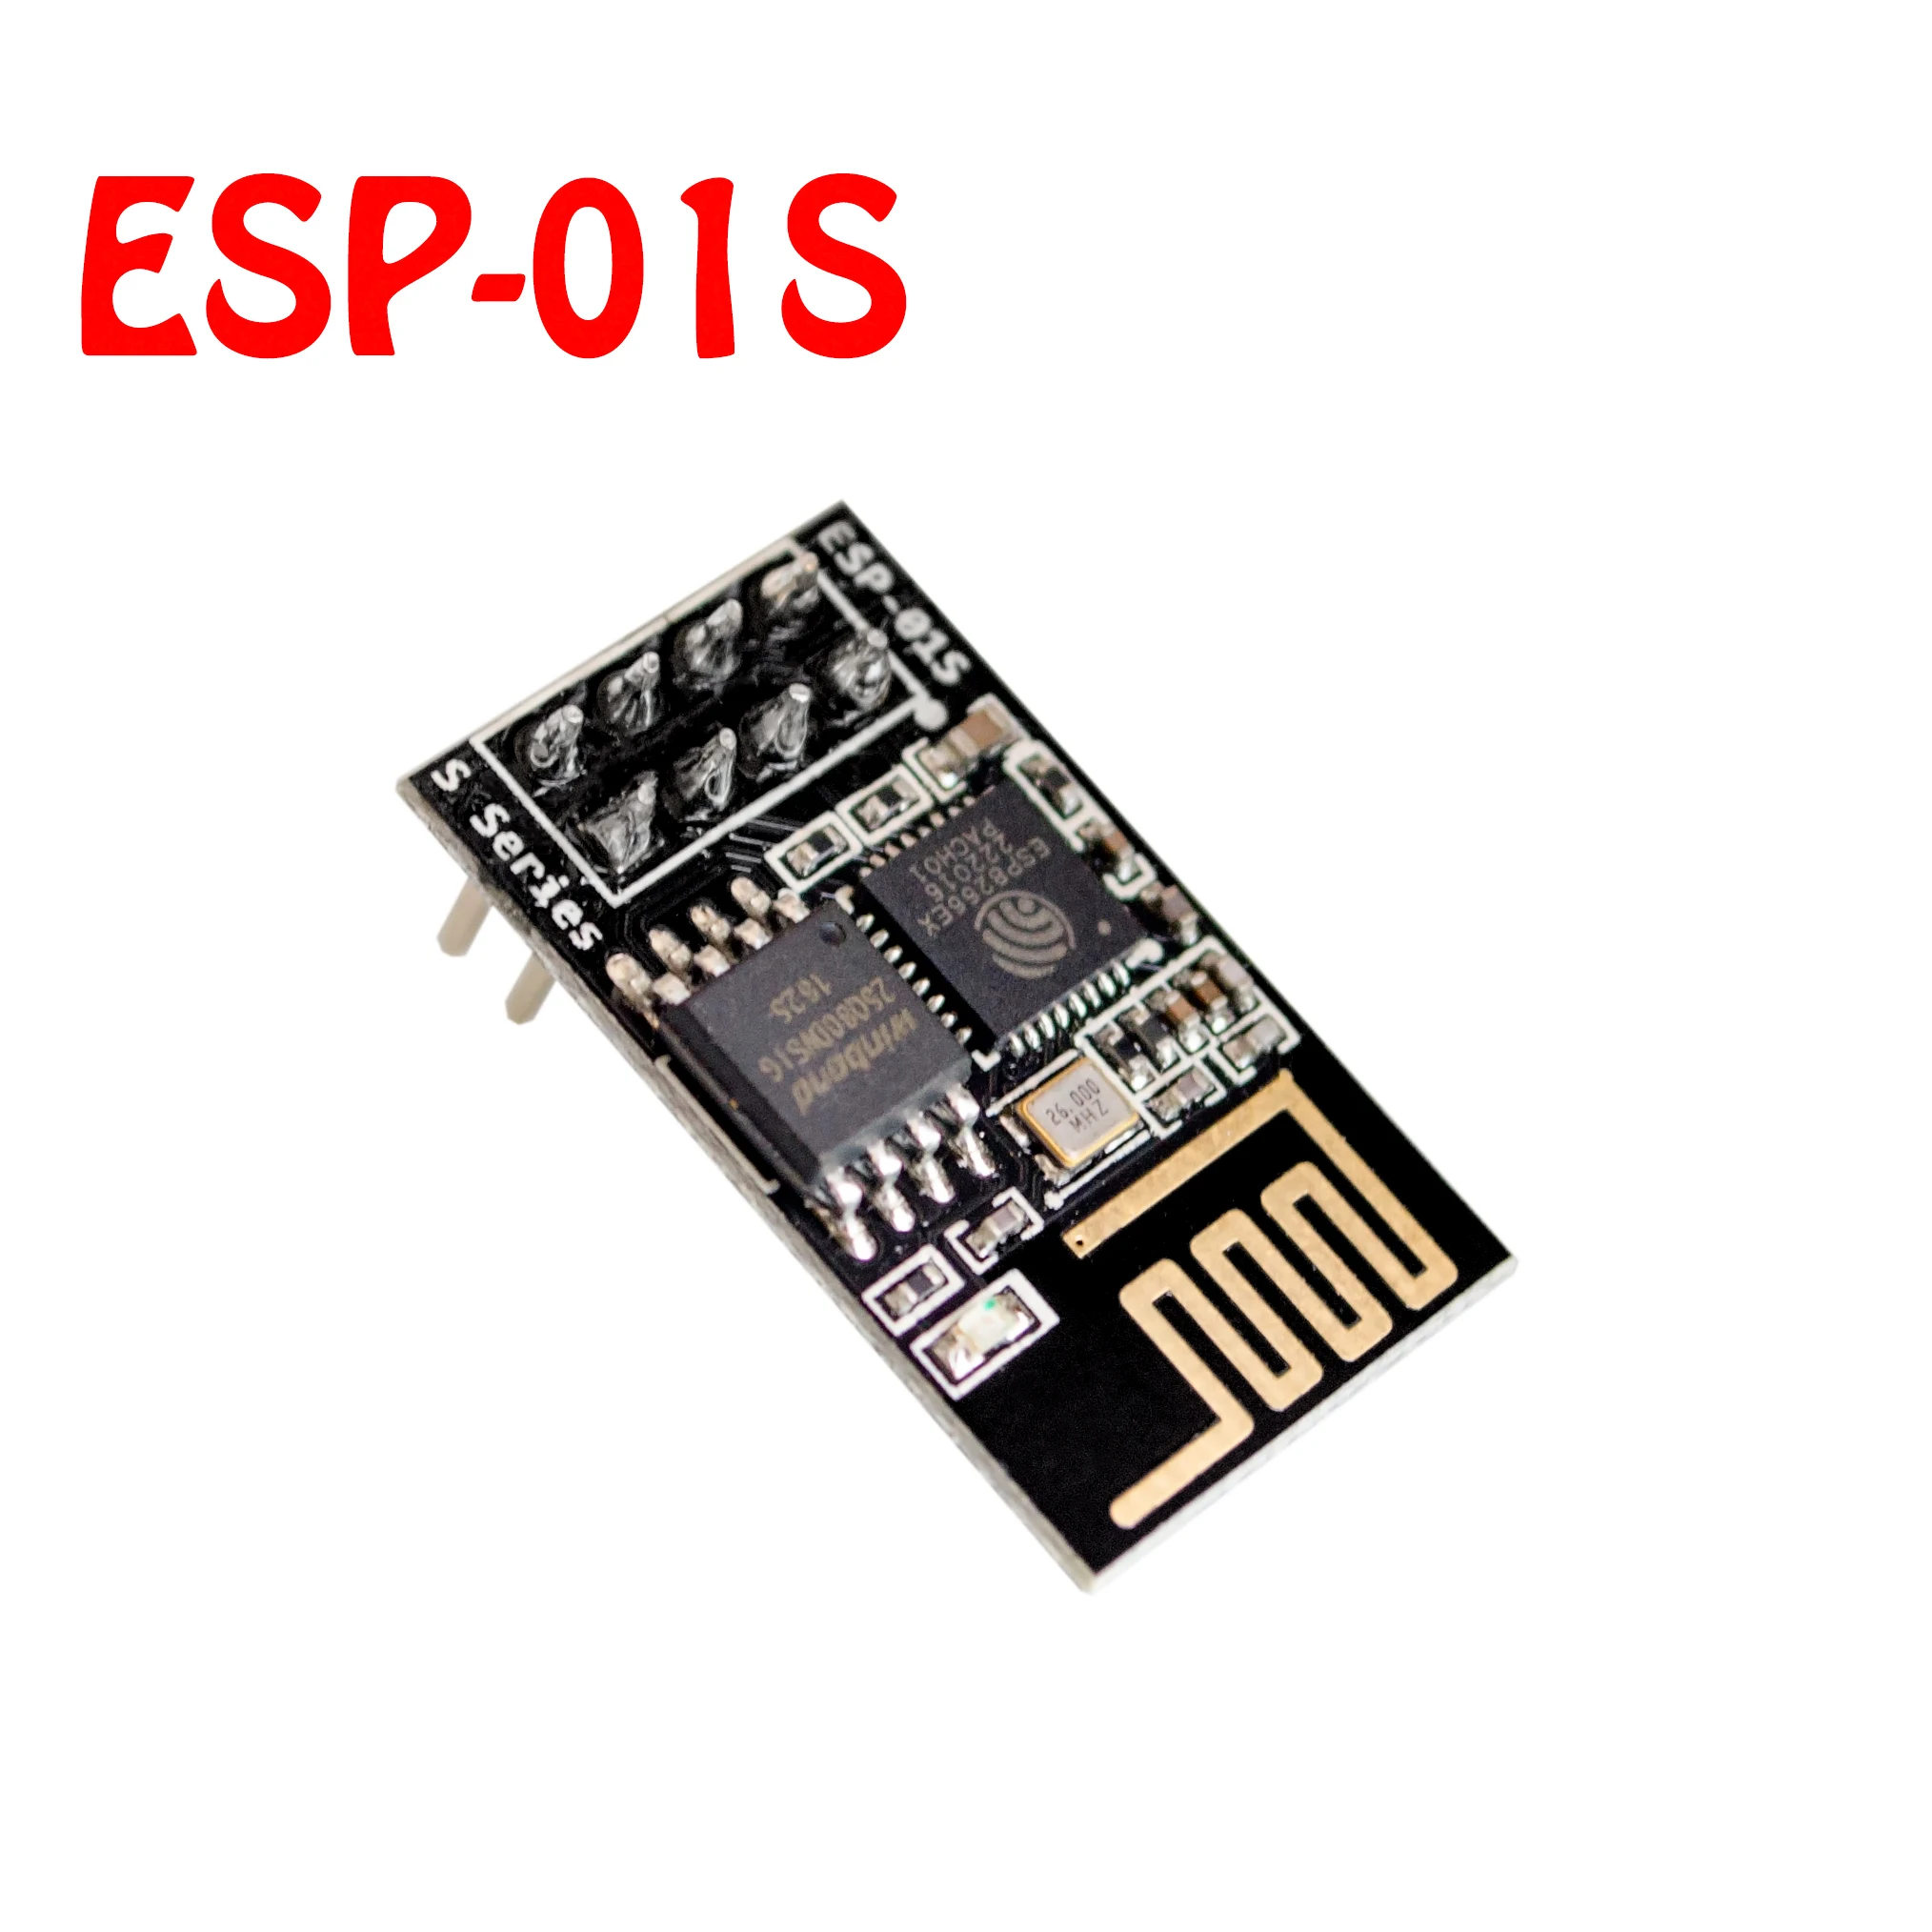 10 шт./лот ESP-01S ESP8266 серийный wifi модель(ESP-01 обновленная версия) подлинность гарантирована, Интернет вещей